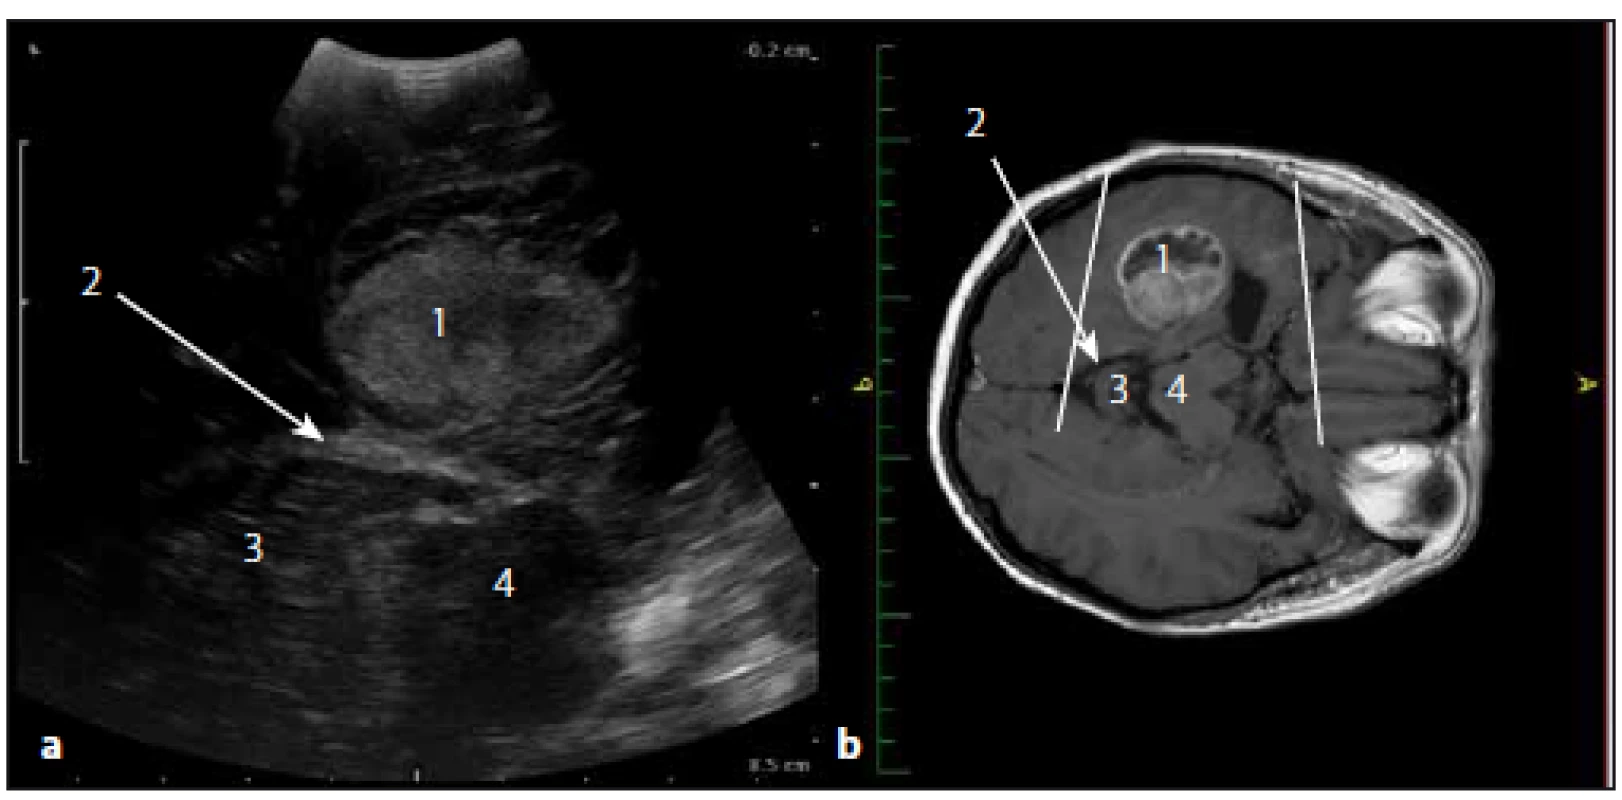 Sonografický obraz a odpovídající upravený MR T1W obraz glioblastomu levého temporálního laloku.
Fig. 8. Ultrasound image and corresponding adjusted MRI T1W image of the temporal lobe glioblastoma.